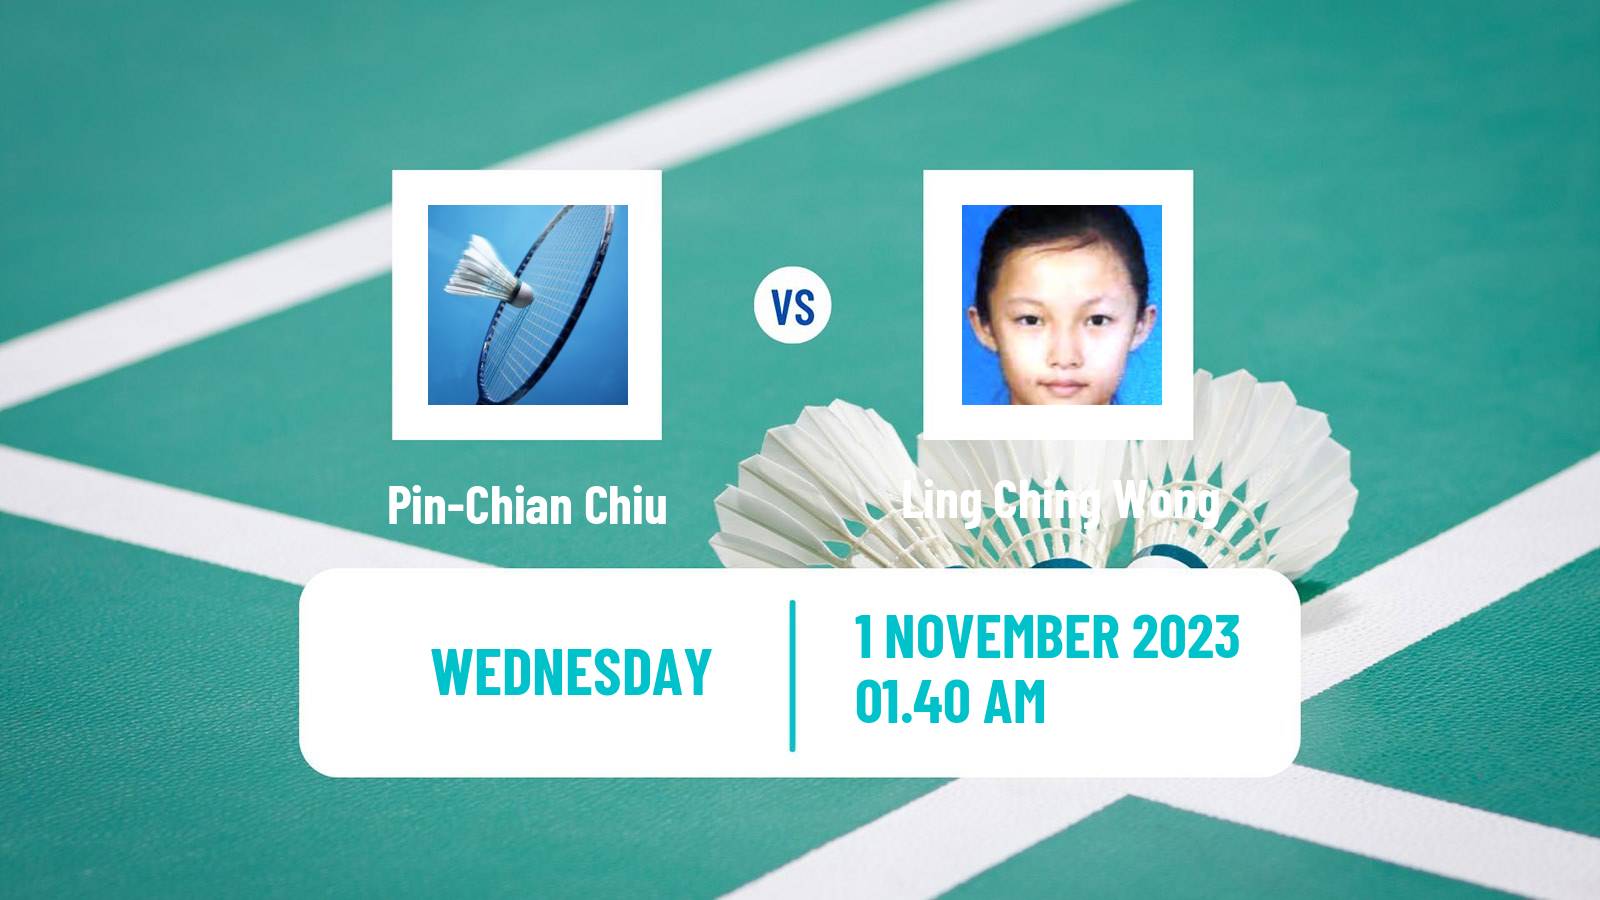 Badminton BWF World Tour Kl Masters Malaysia Super 100 Women Pin-Chian Chiu - Ling Ching Wong